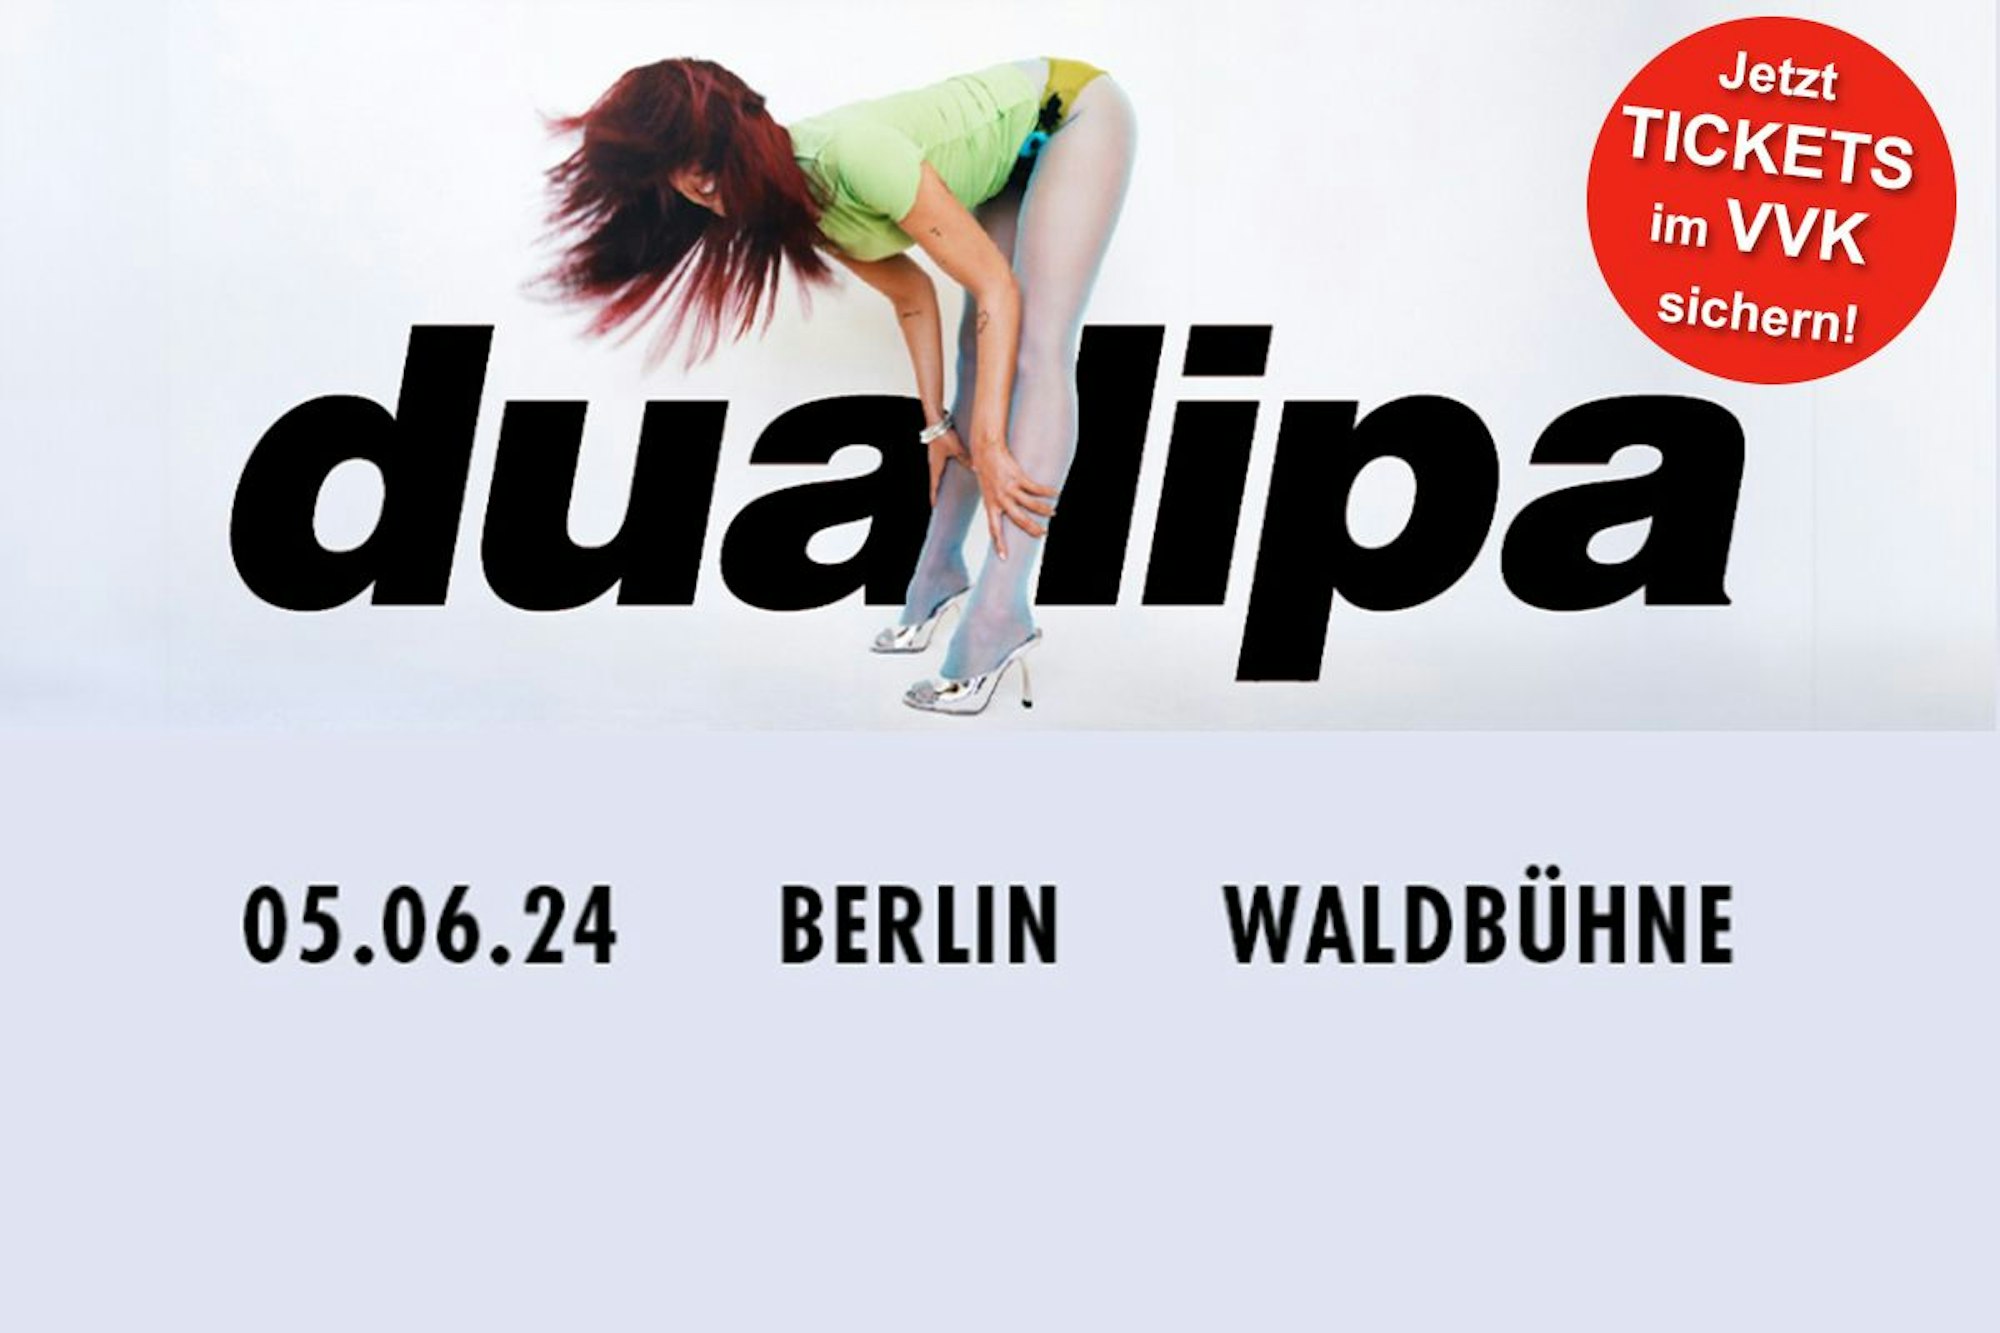 Dua Lipa wird im Juni 2024 eine exklusive Show in Berlin spielen! Jetzt Tickets im VVK sichern!